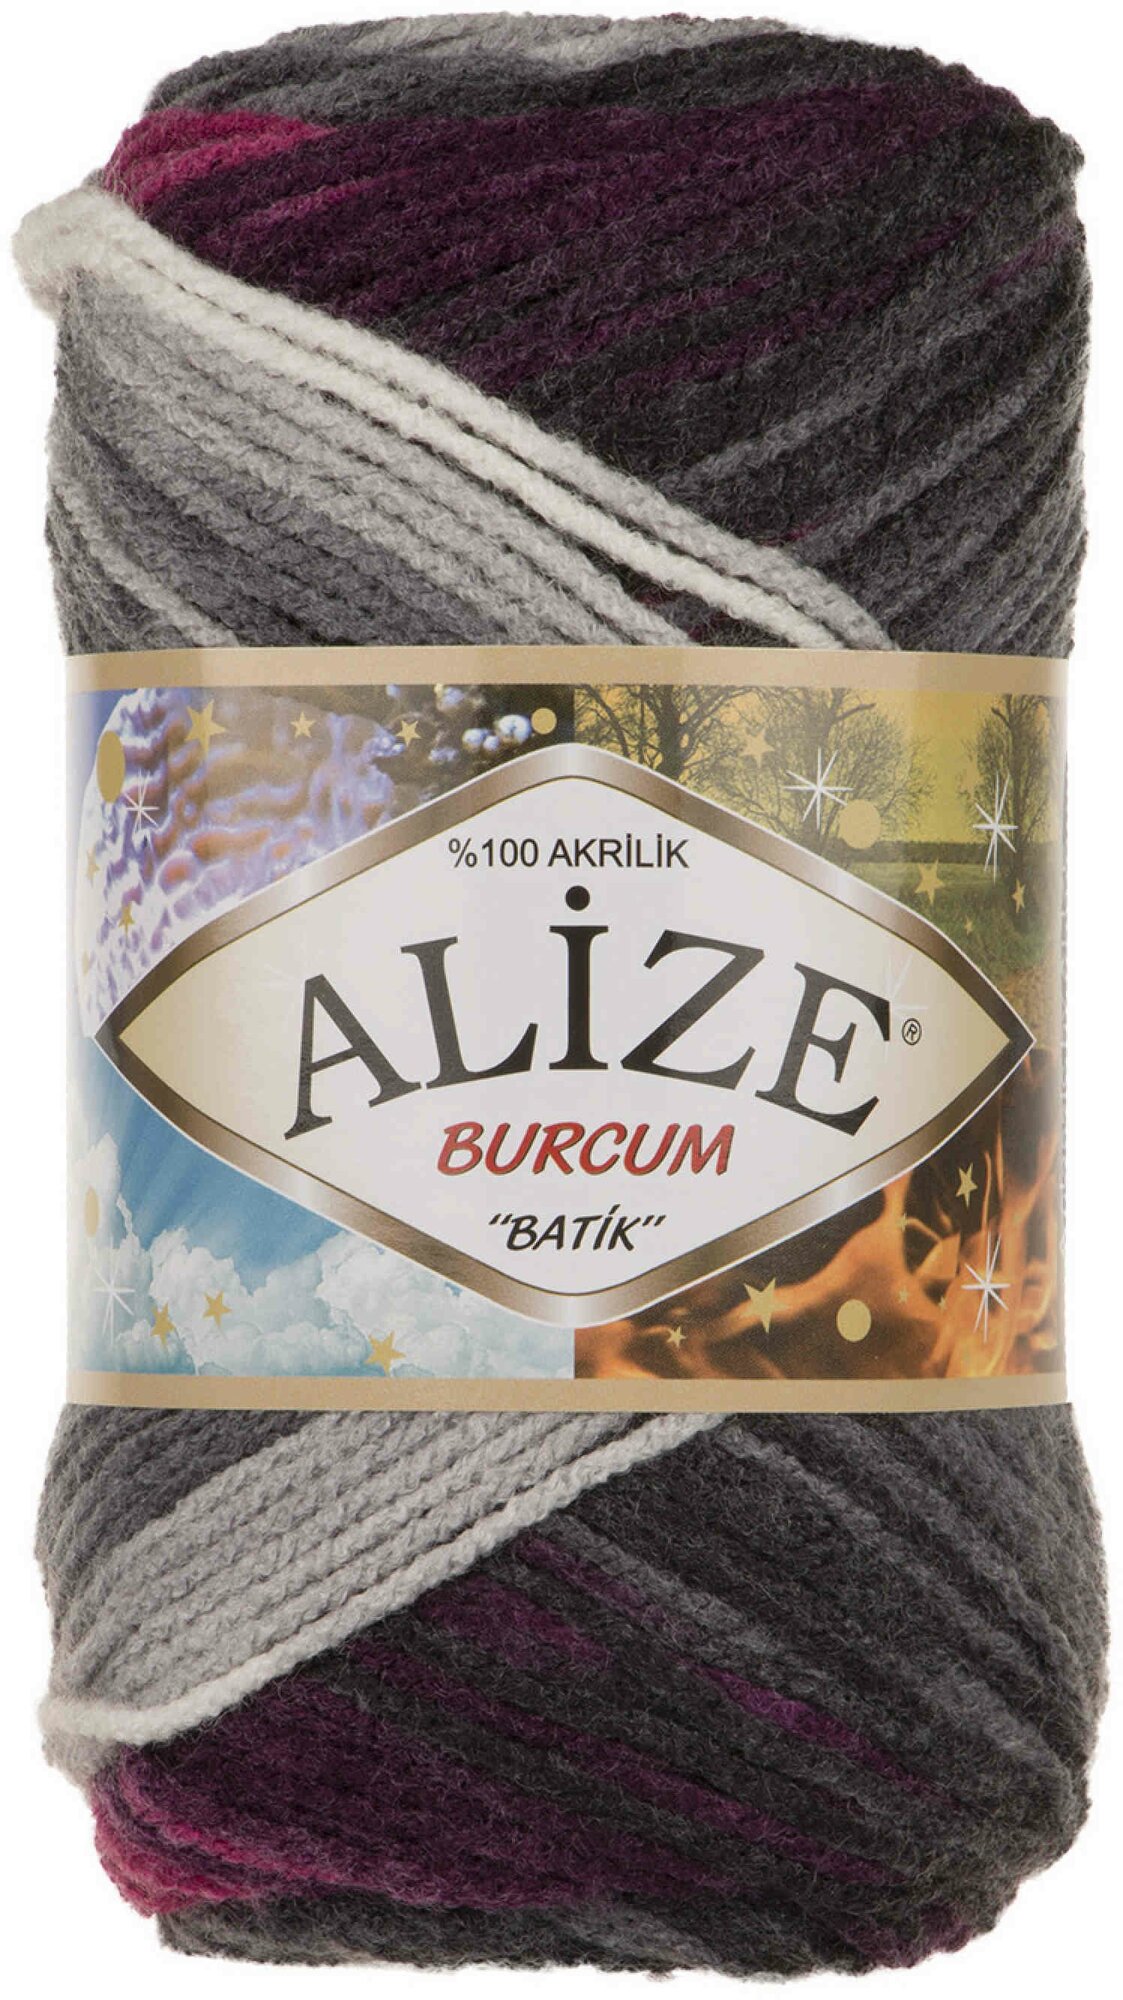 Пряжа Alize Burcum Batik белый-серый-фуксия (4202), 100%акрил, 210м, 100г, 1шт